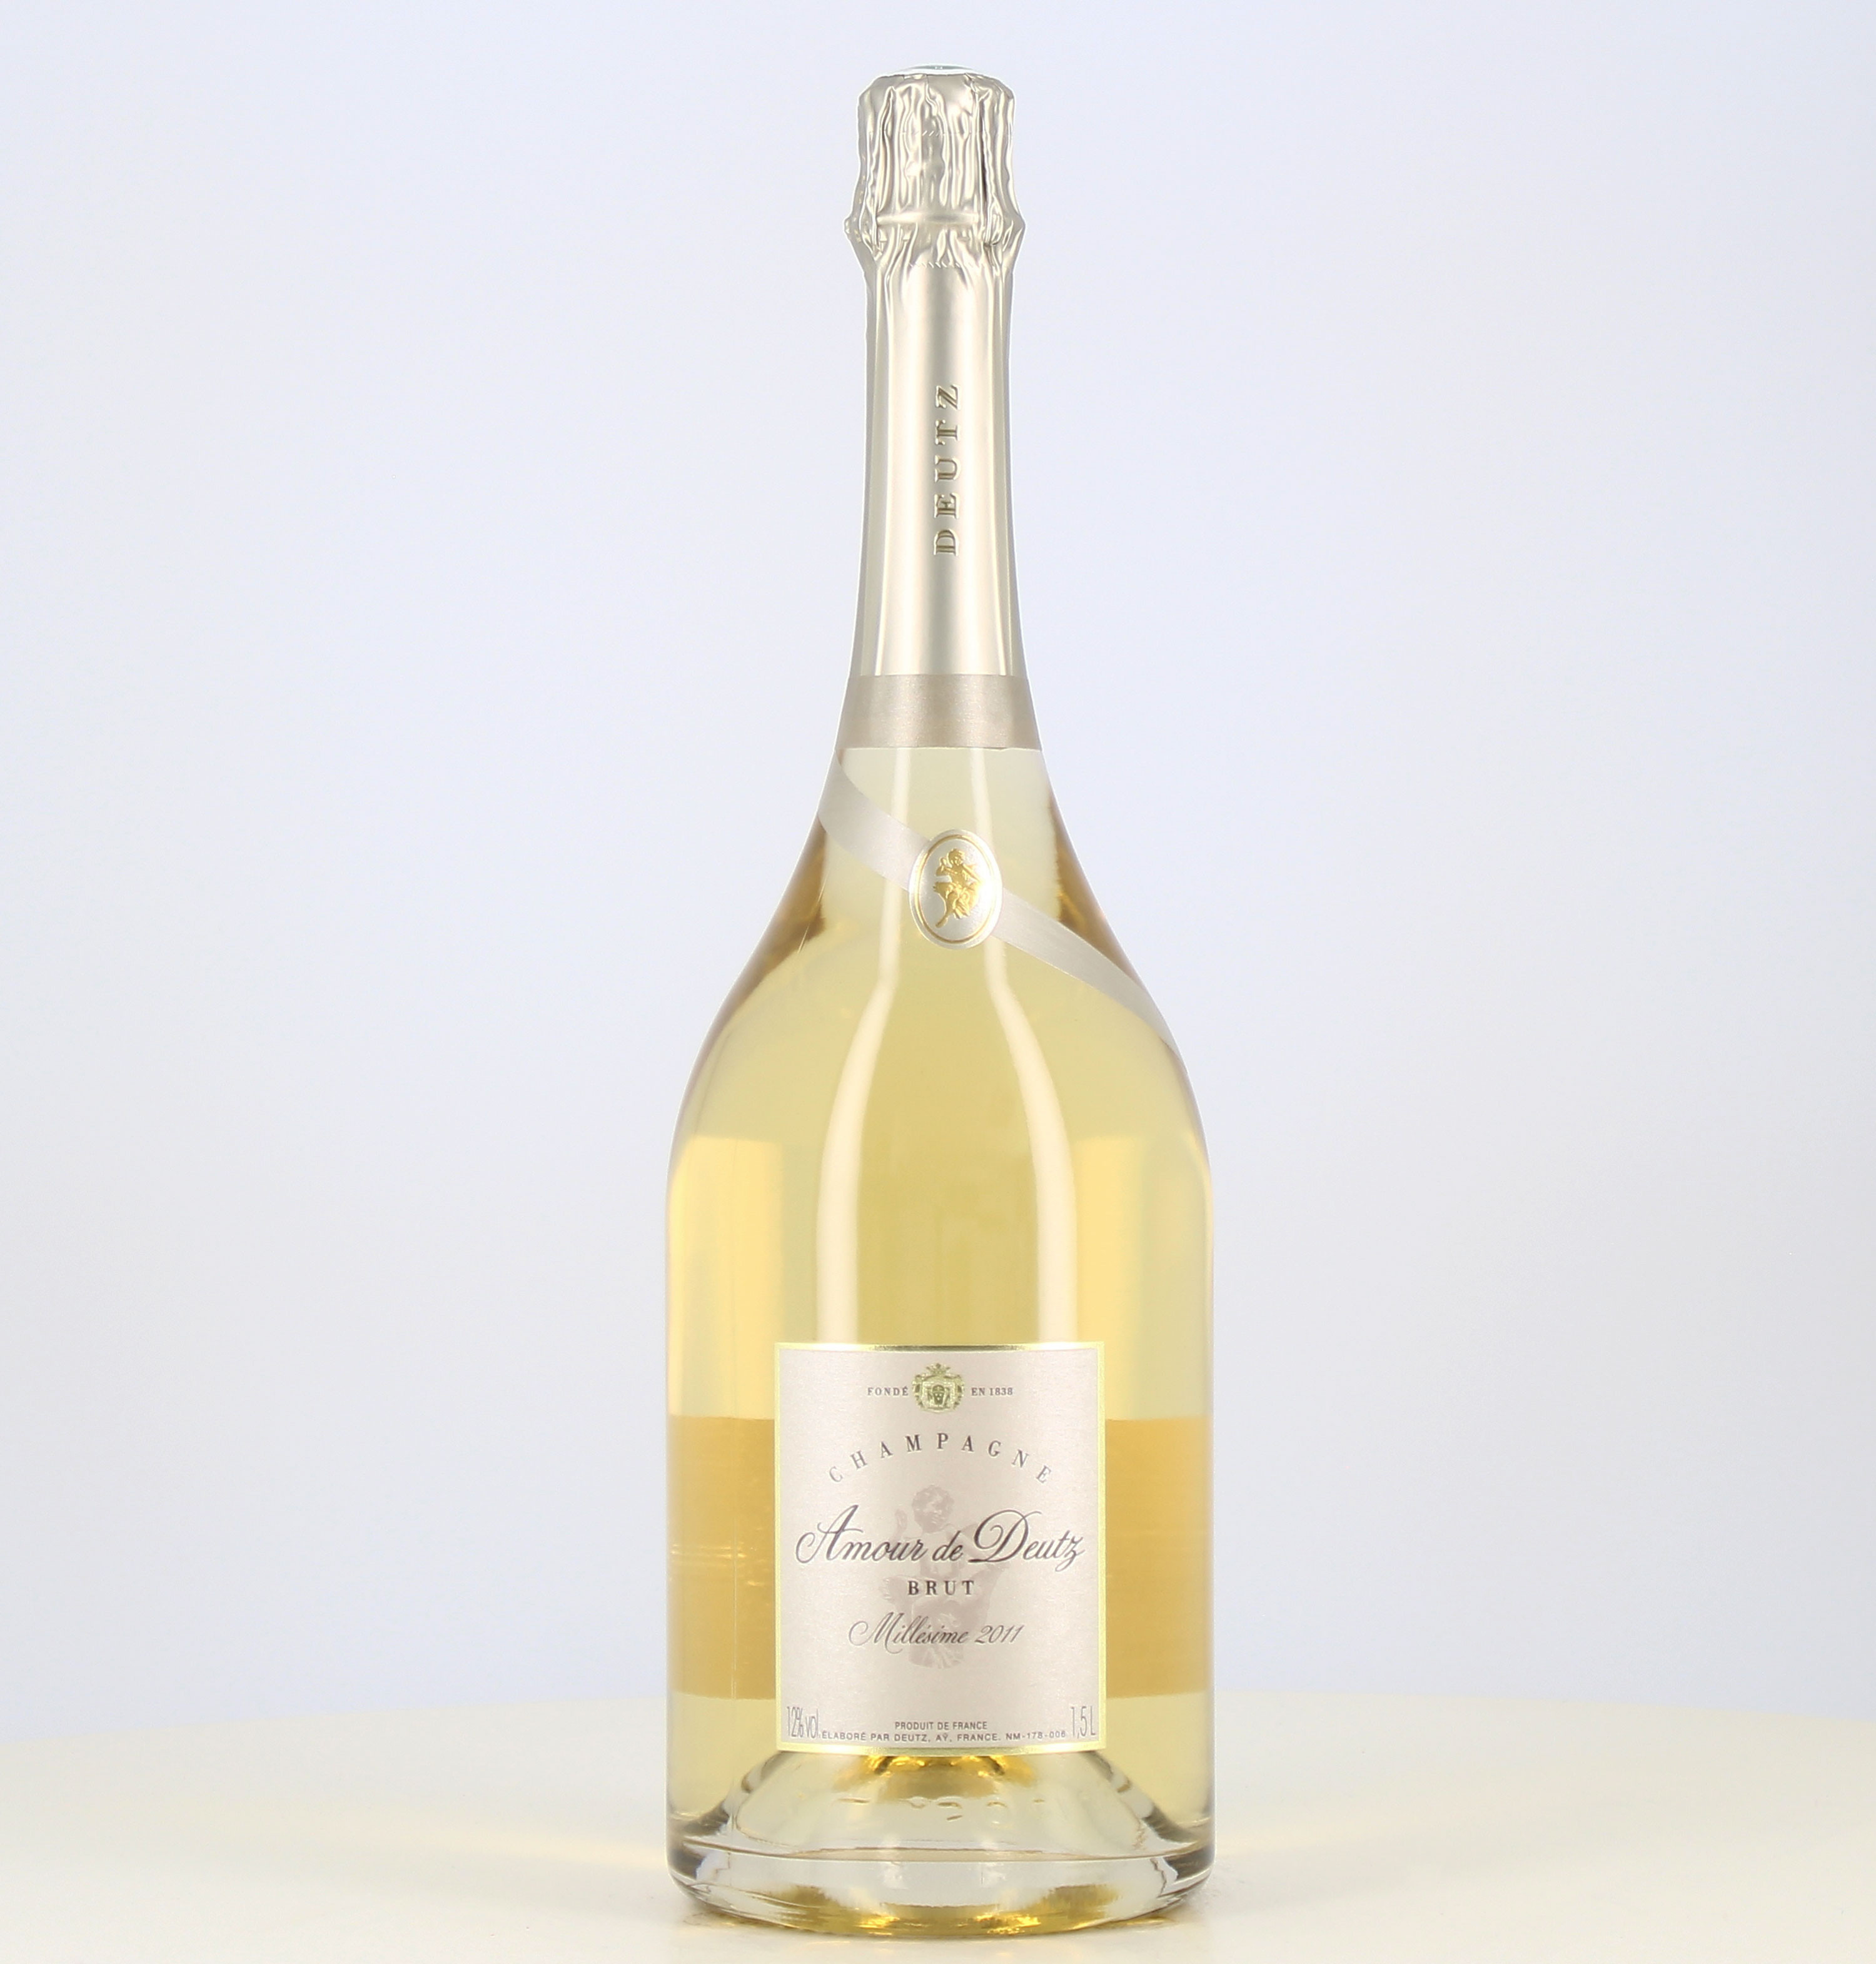 Magnum Champagne Amour de Deutz white vintage 2011 